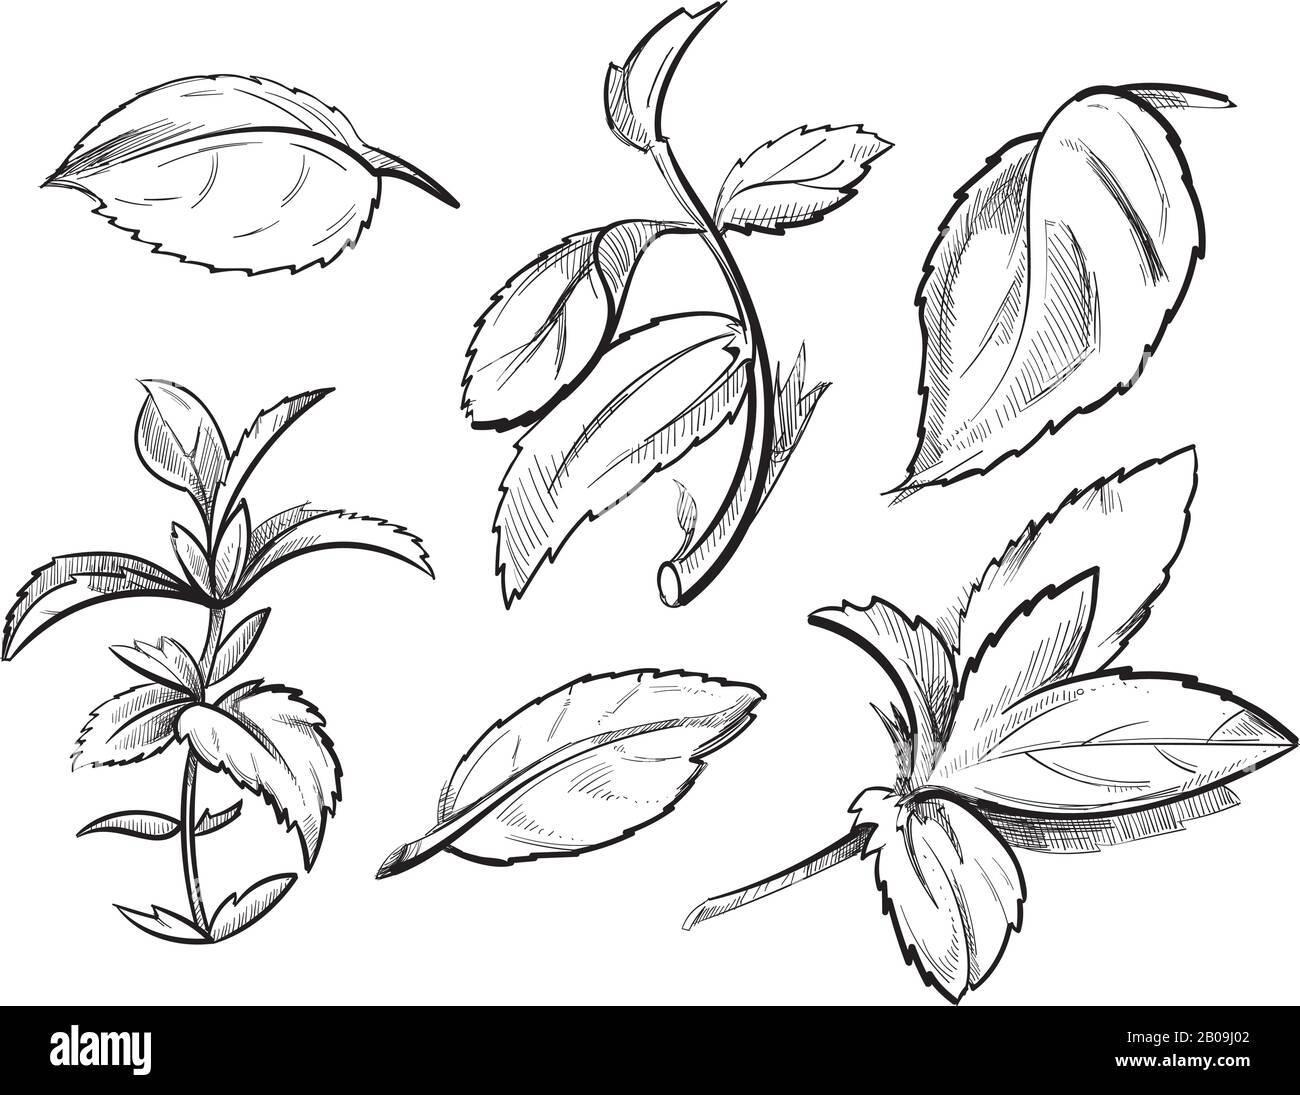 Menthe, herbe de médecine menthe poivrée feuilles main dessinée illustration vectorielle. Ingrédient en miningrédient organique, esquisse de menthe aux épices de plantes à base de plantes à base de plantes Illustration de Vecteur